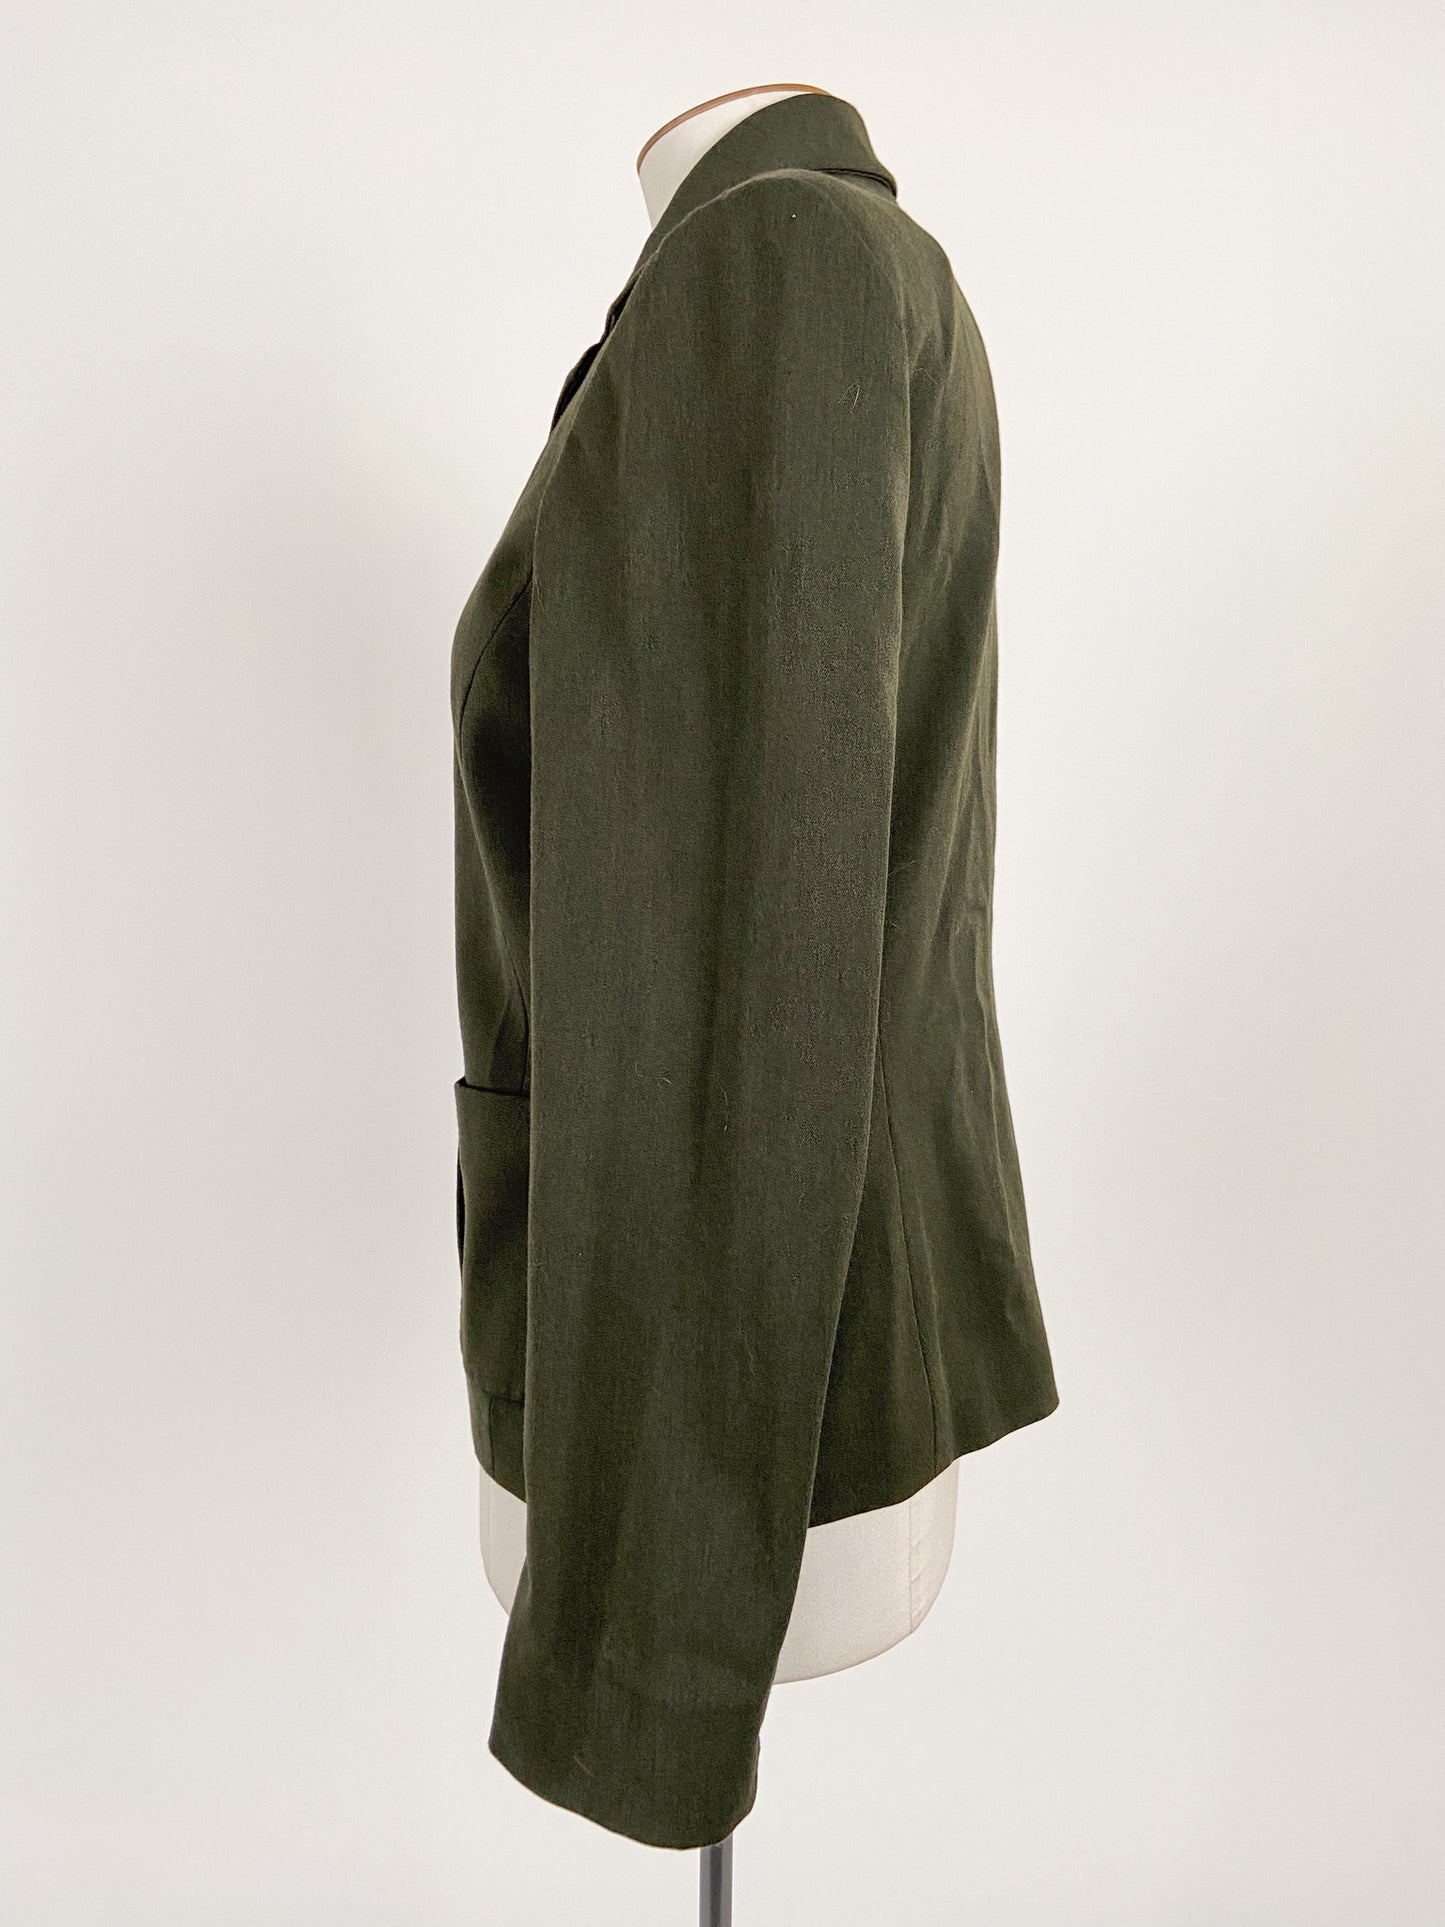 Liz Claiborne | Green Workwear Jacket | Size M